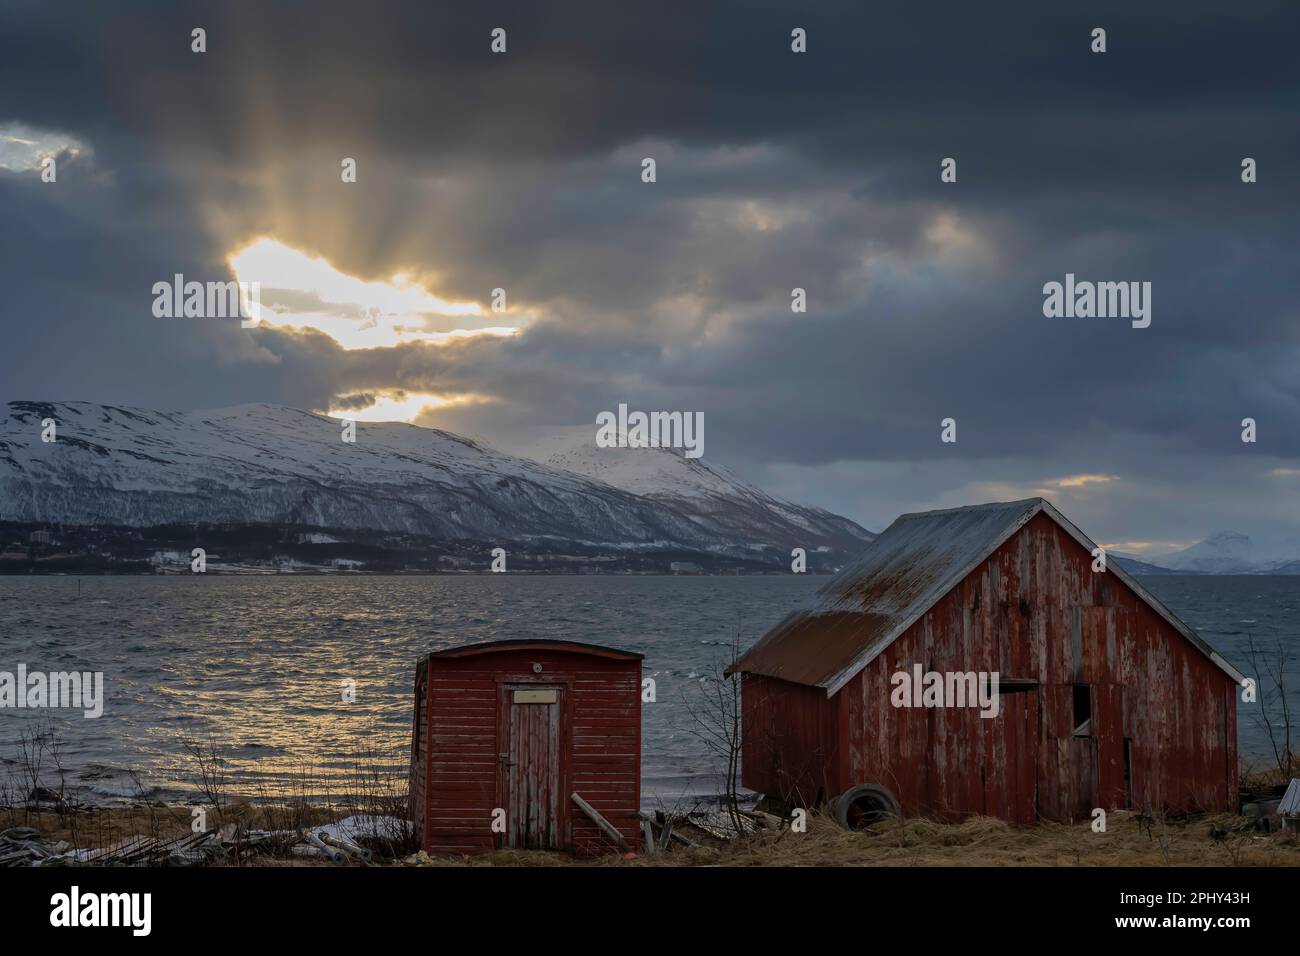 Rayos crepusculares rompiendo a través de las nubes, Noruega, Troms, Tromsoe Foto de stock